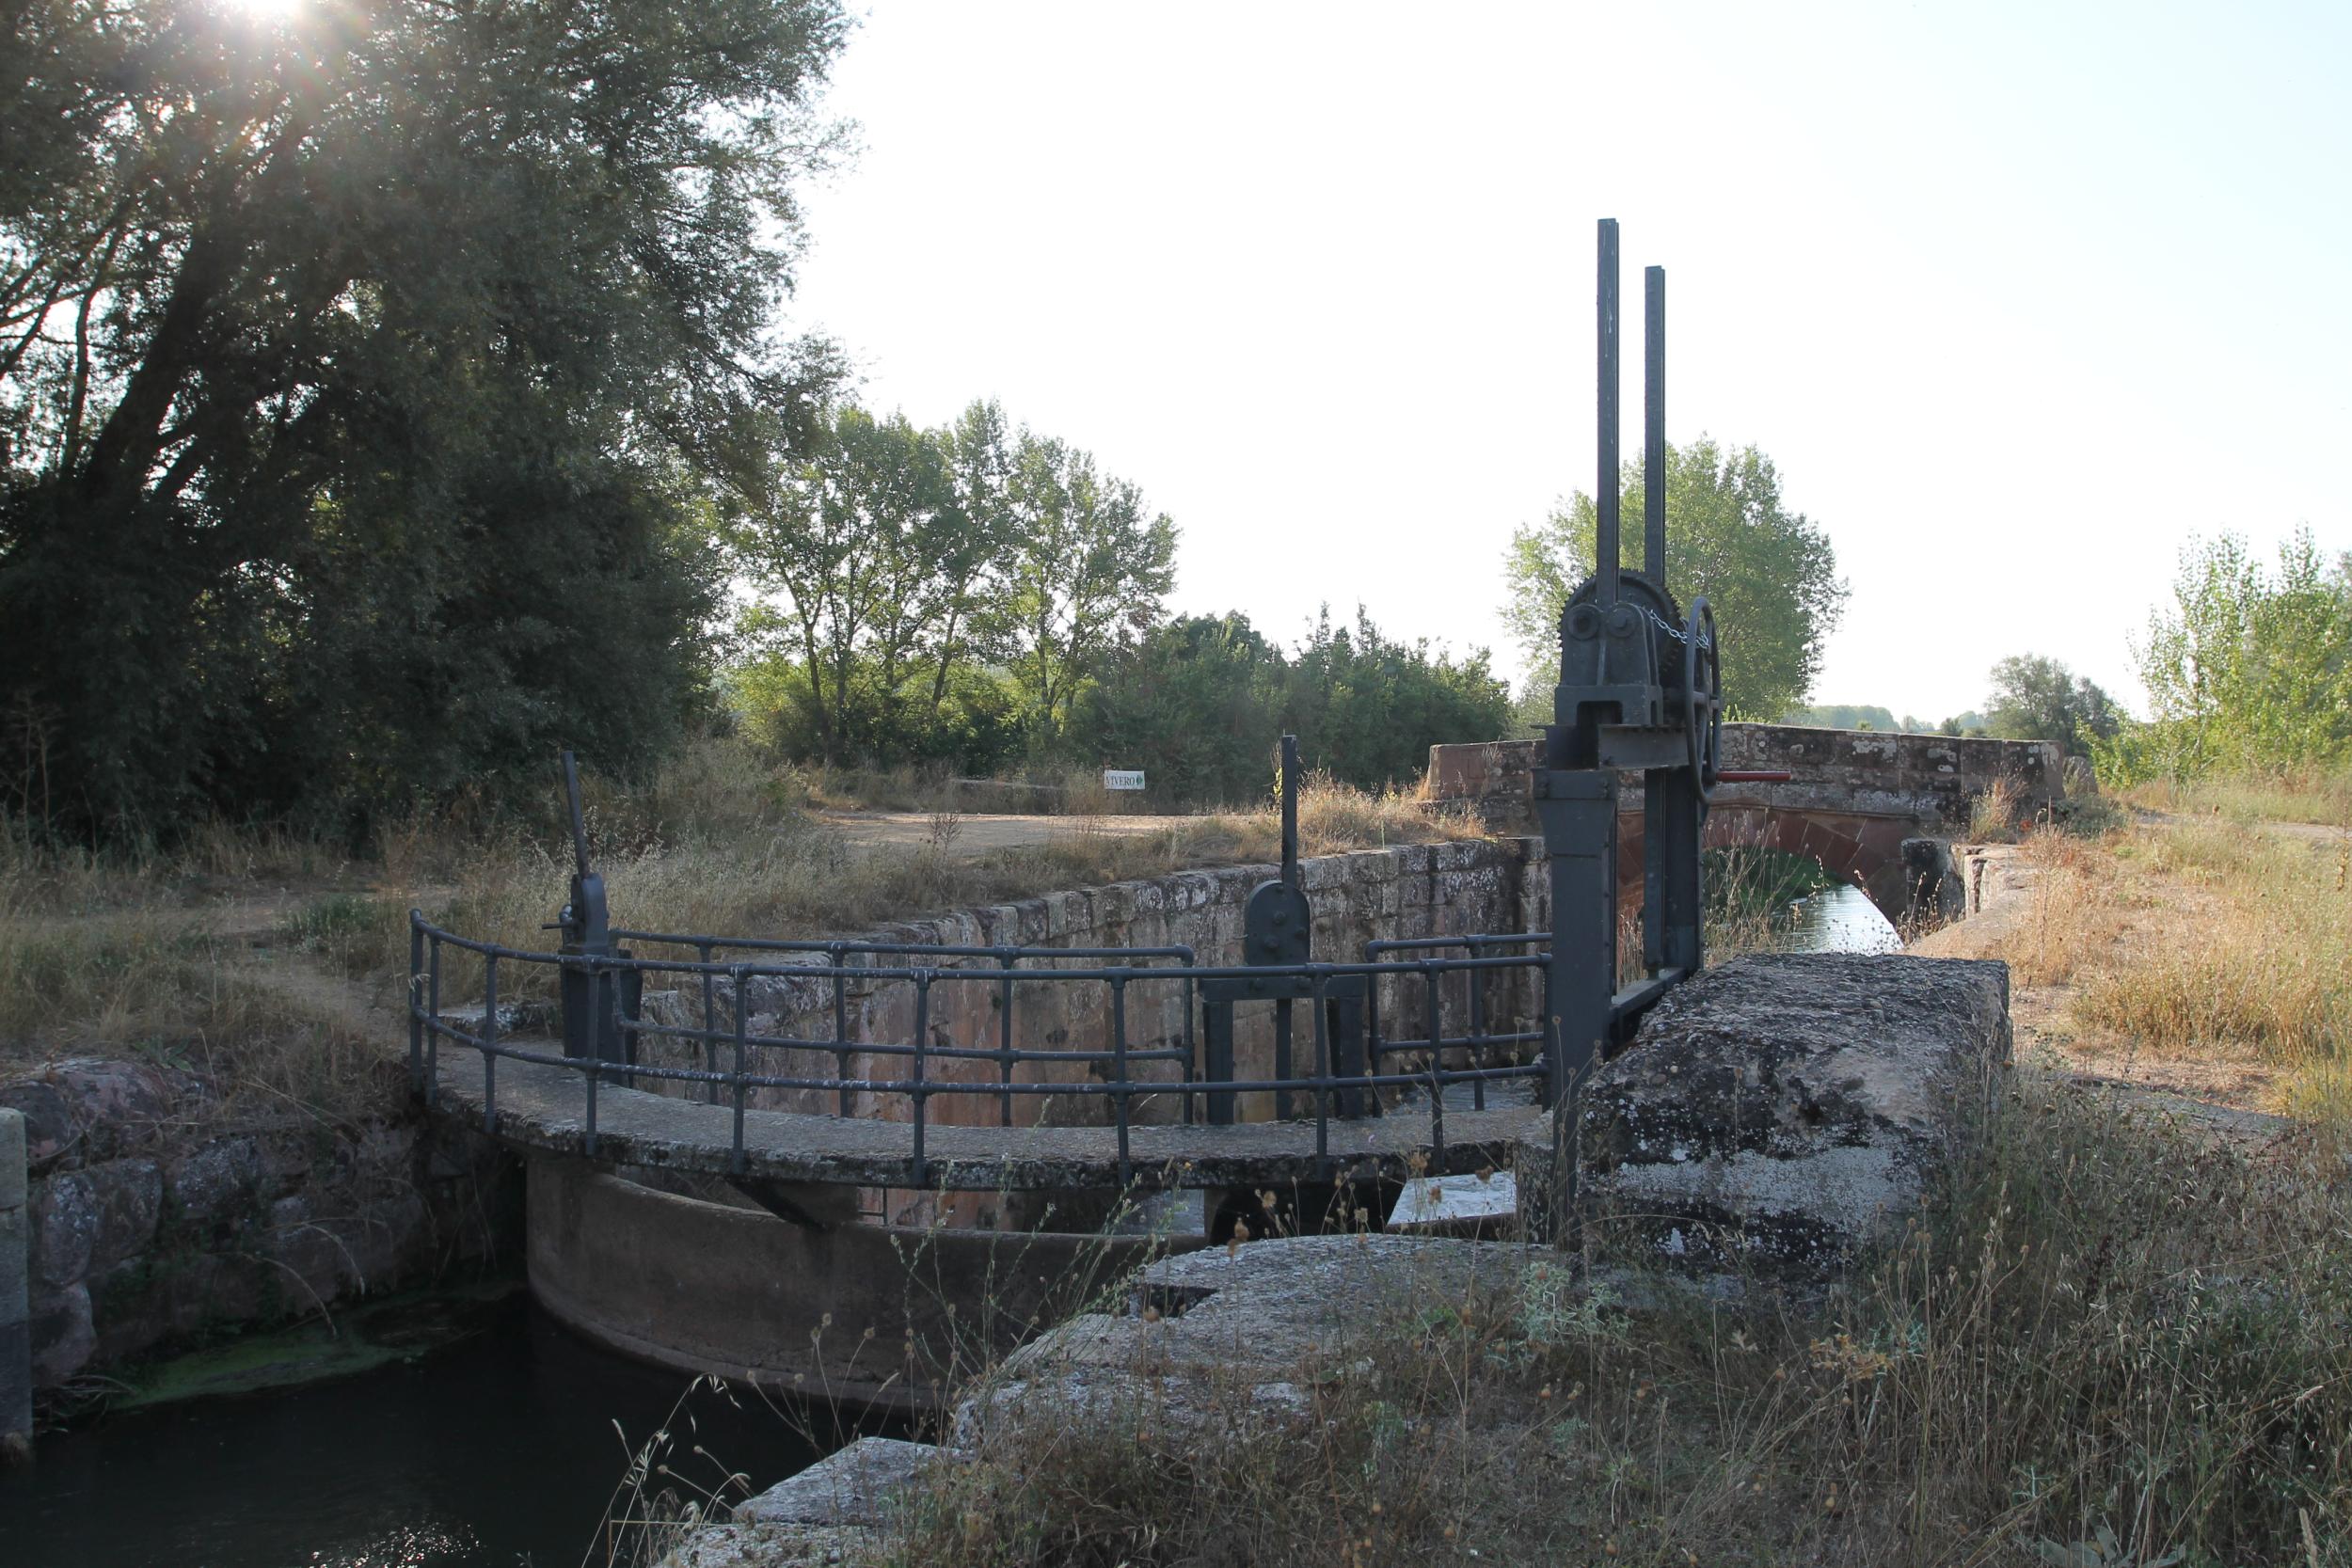 Esclusa 8 Canal de Castilla